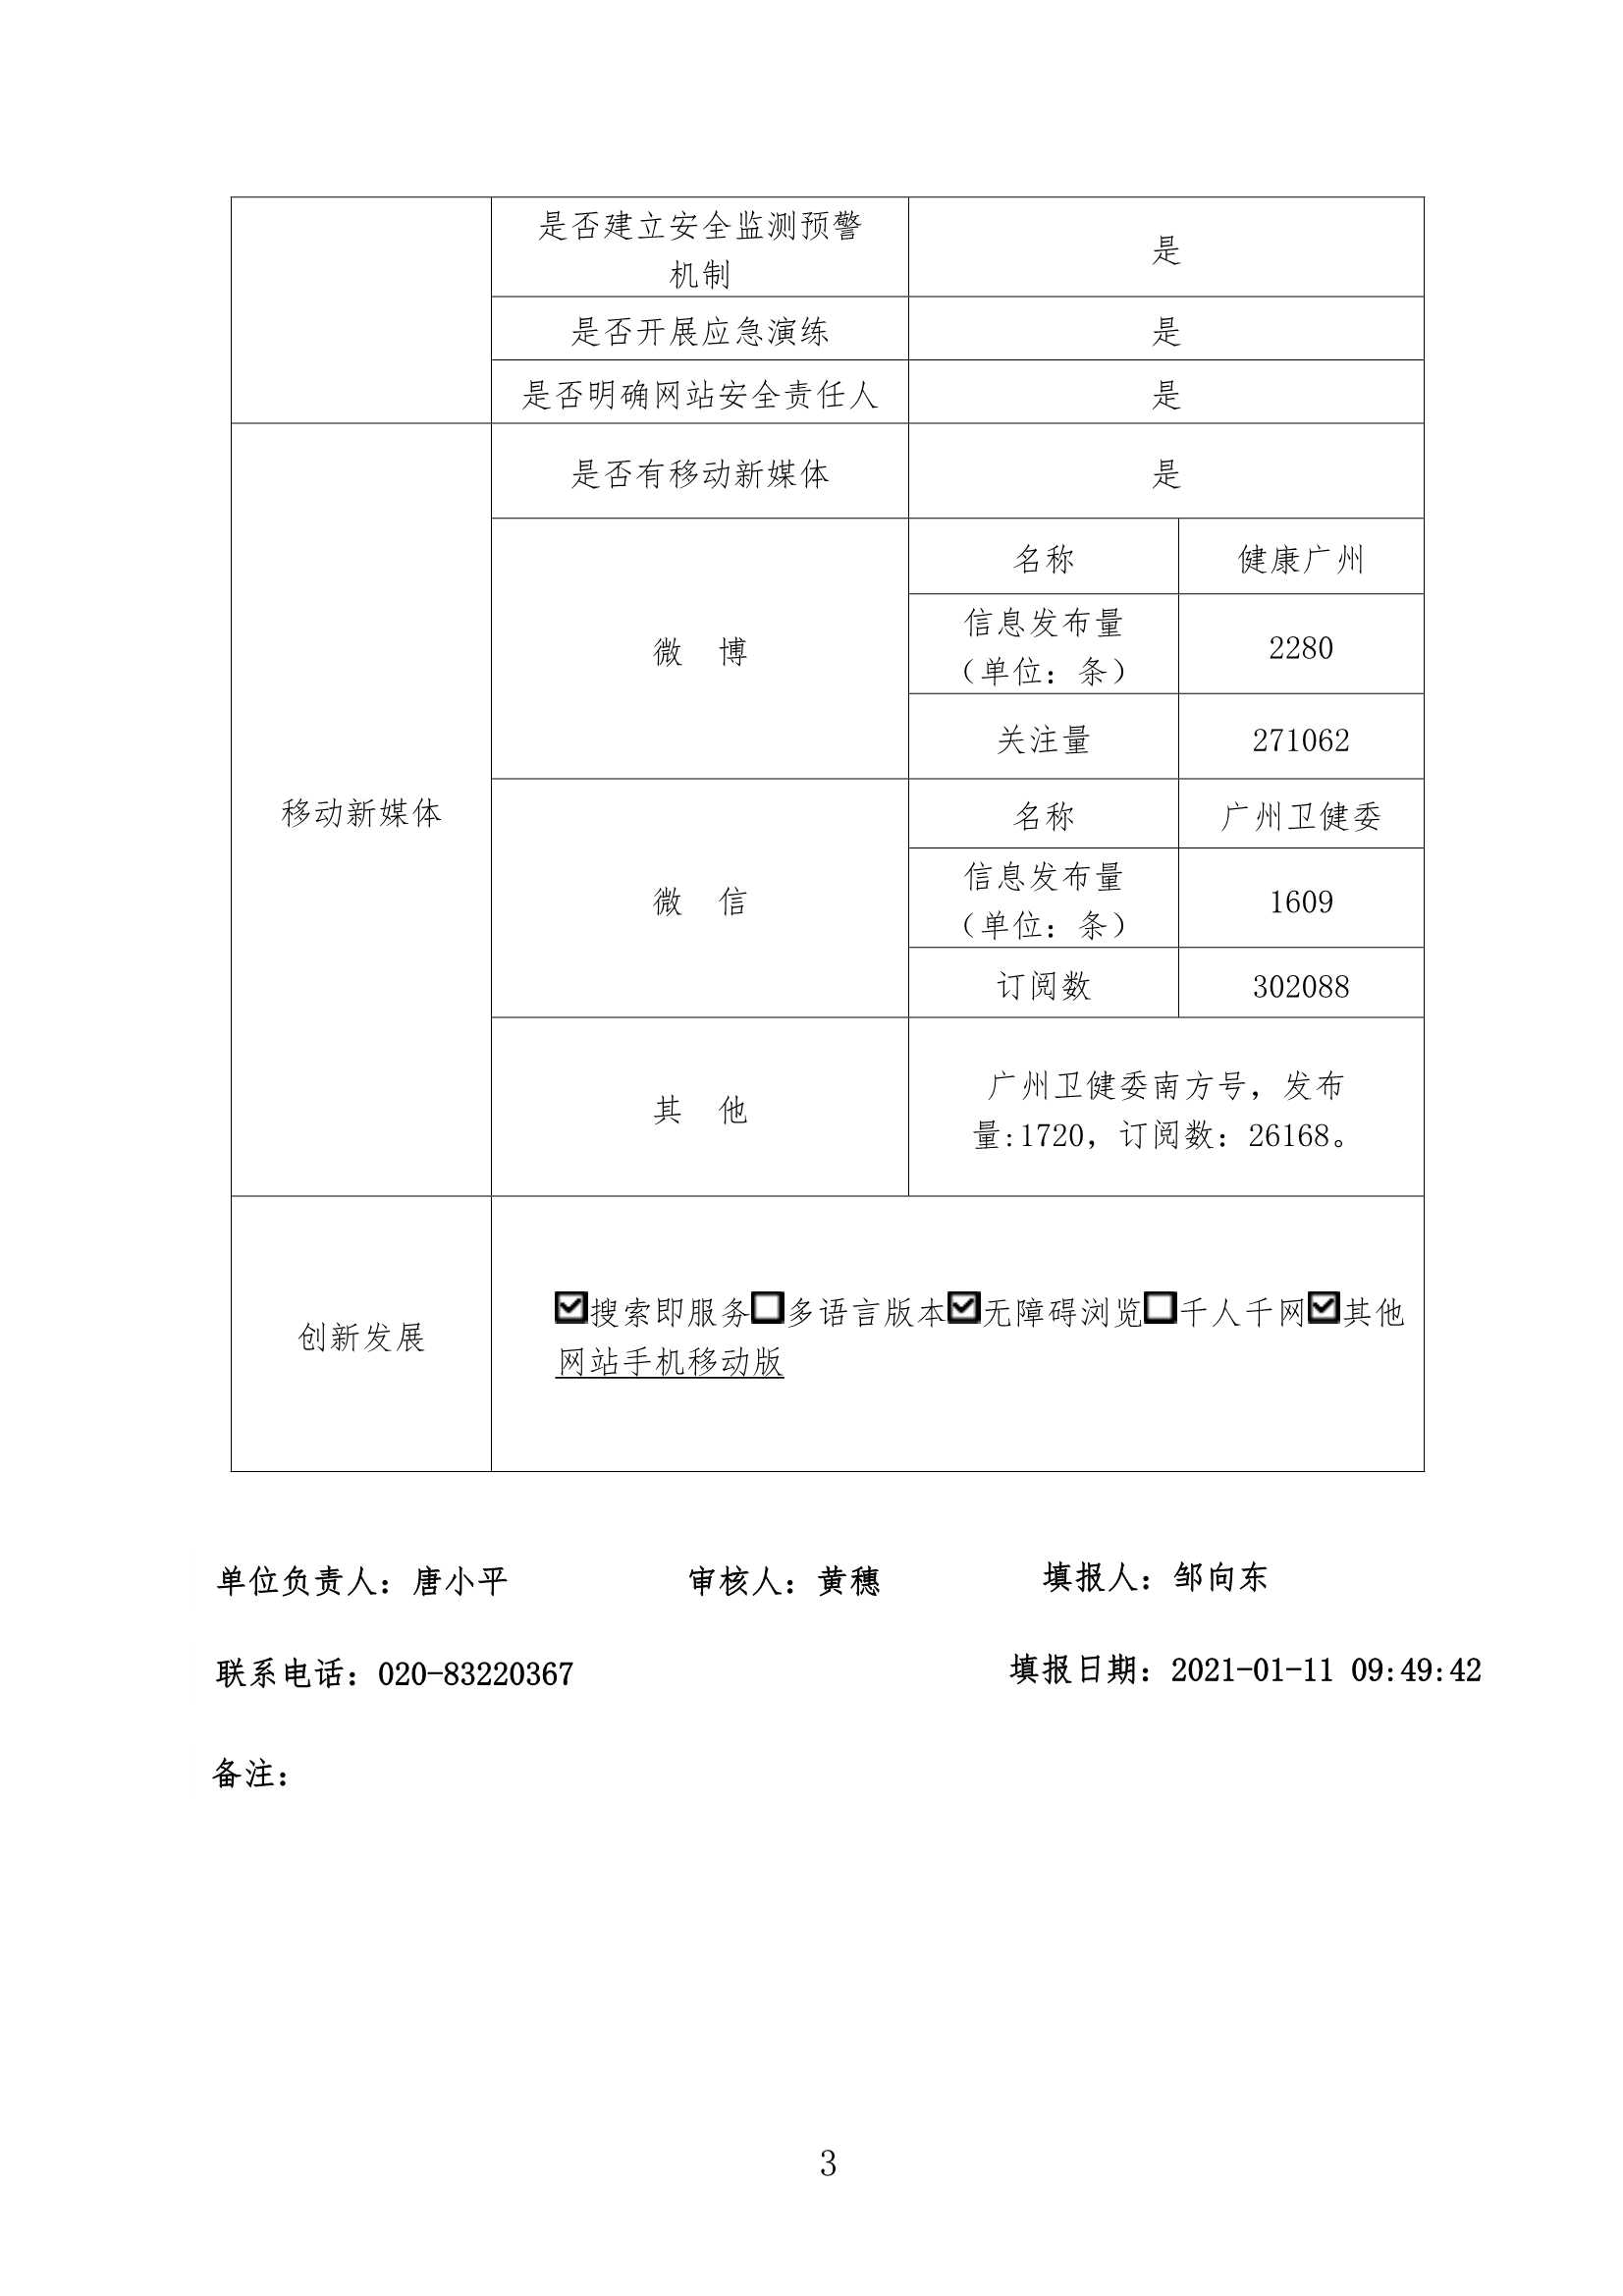 广州市卫生健康委员会政府网站年度工作报表（2020年度）_3.Jpeg